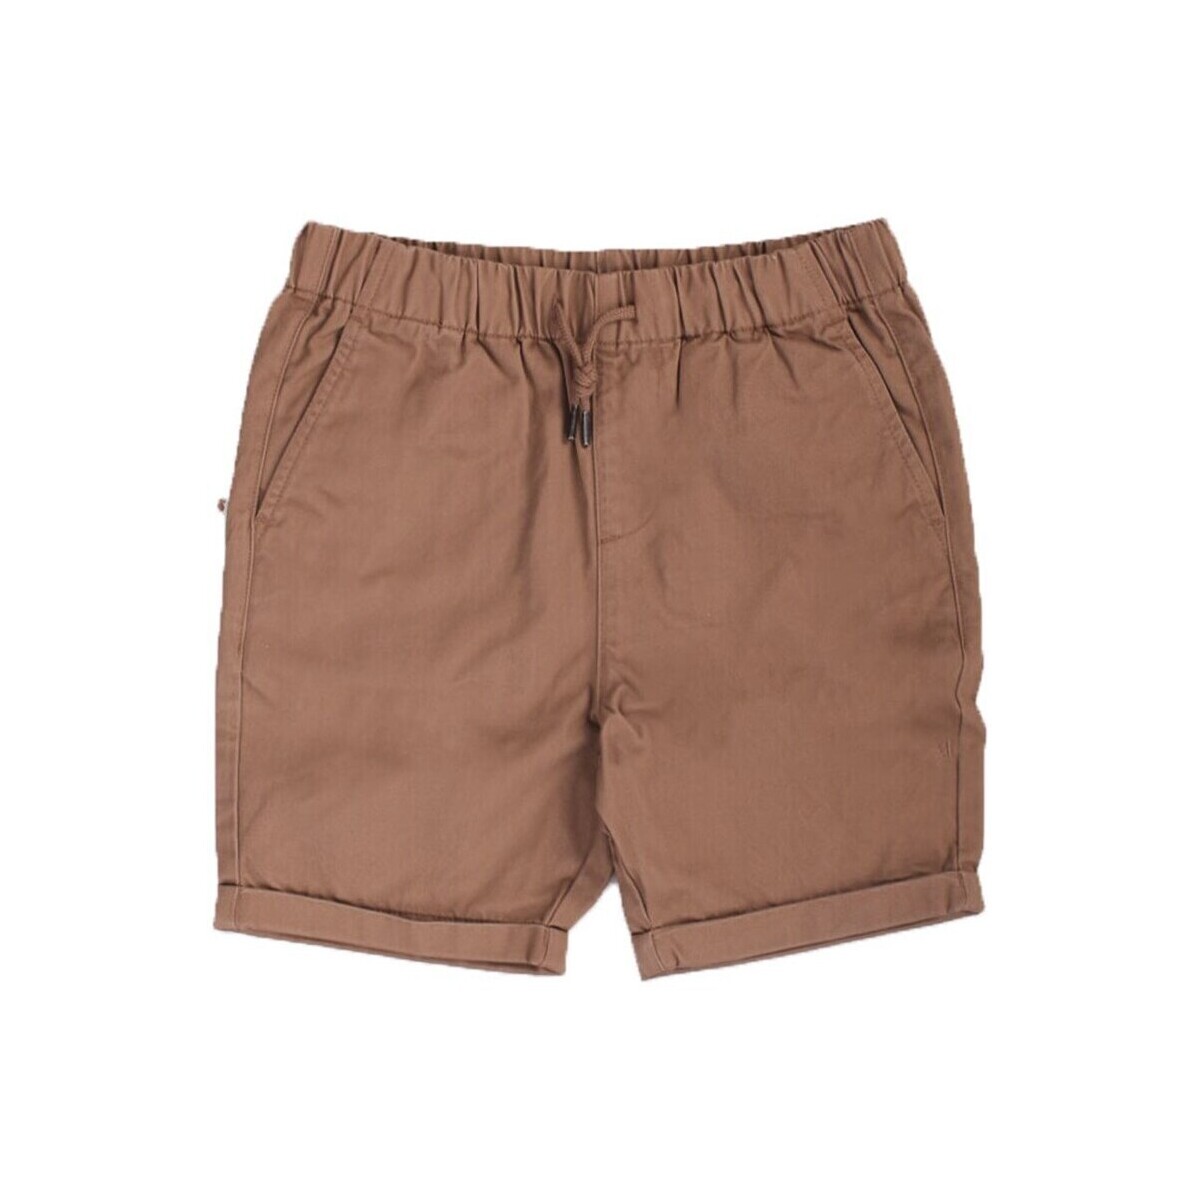 Textil Criança Shorts / Bermudas Barbour CST0001 Bege